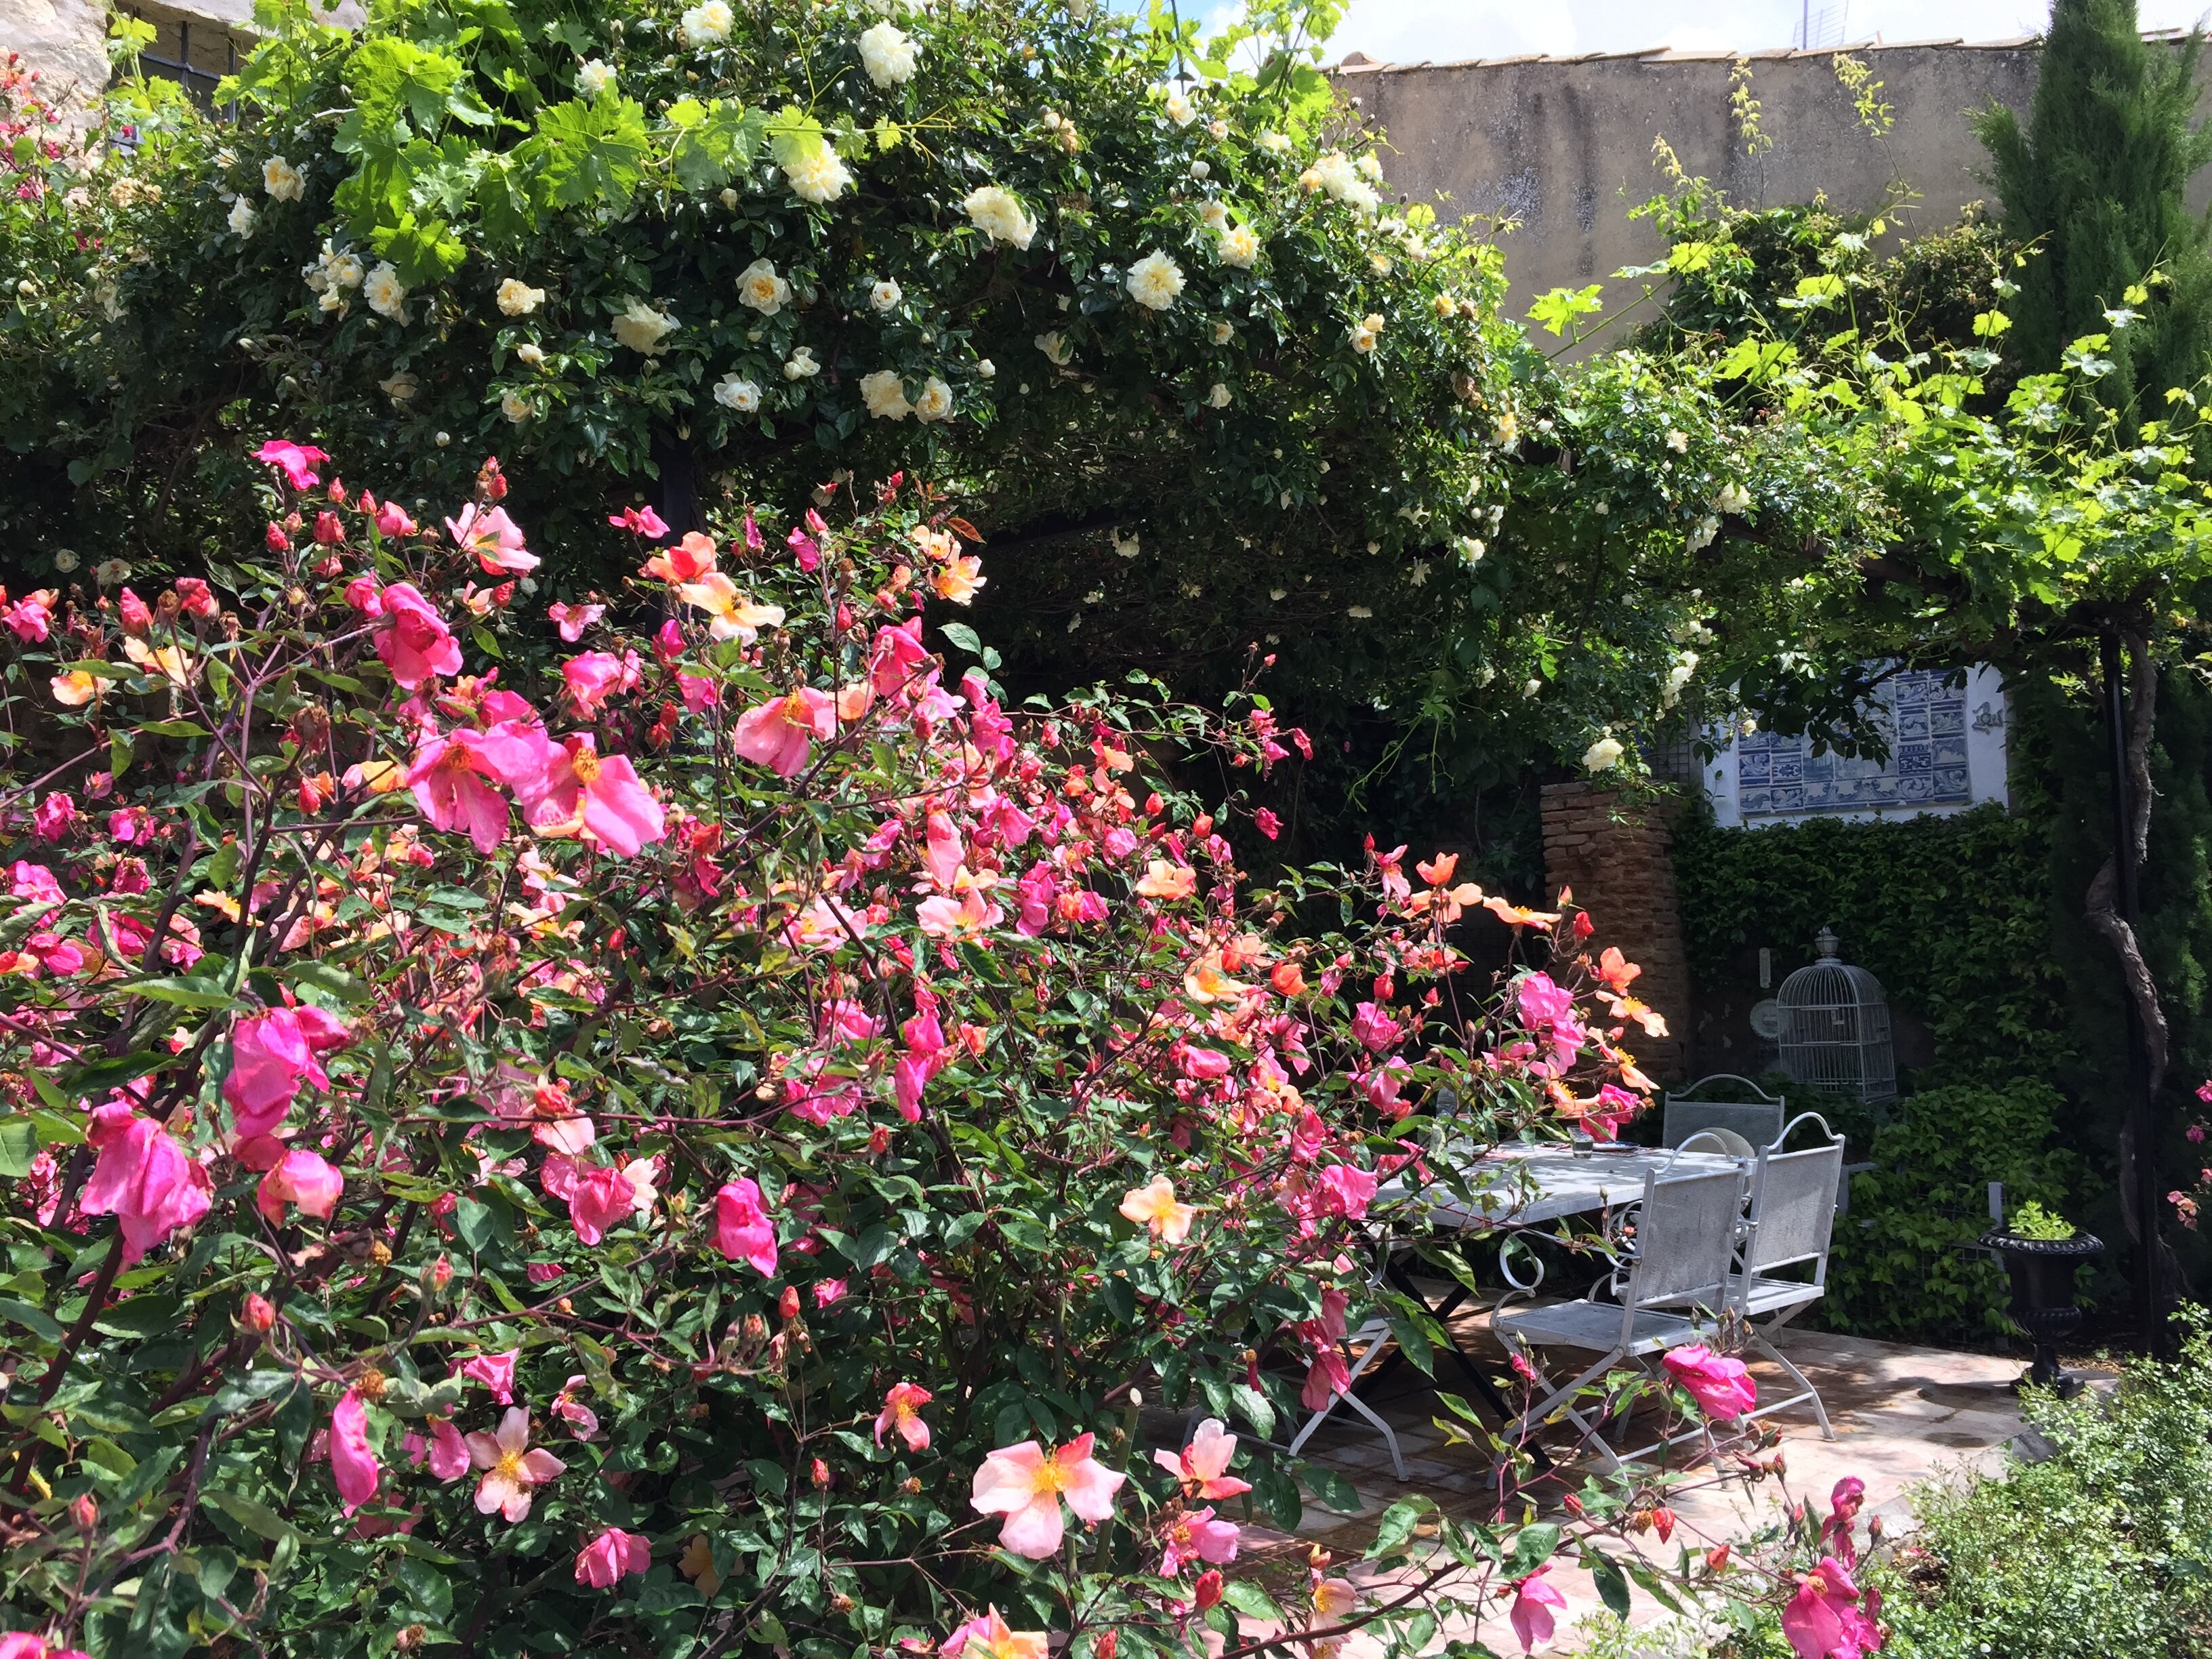 Los colores rosados y amarillentos de la rosa 'Mutabilis' iluminan el jardín alquímico de Manuel Gómez Anuarbe en Uclés (Cuenca).